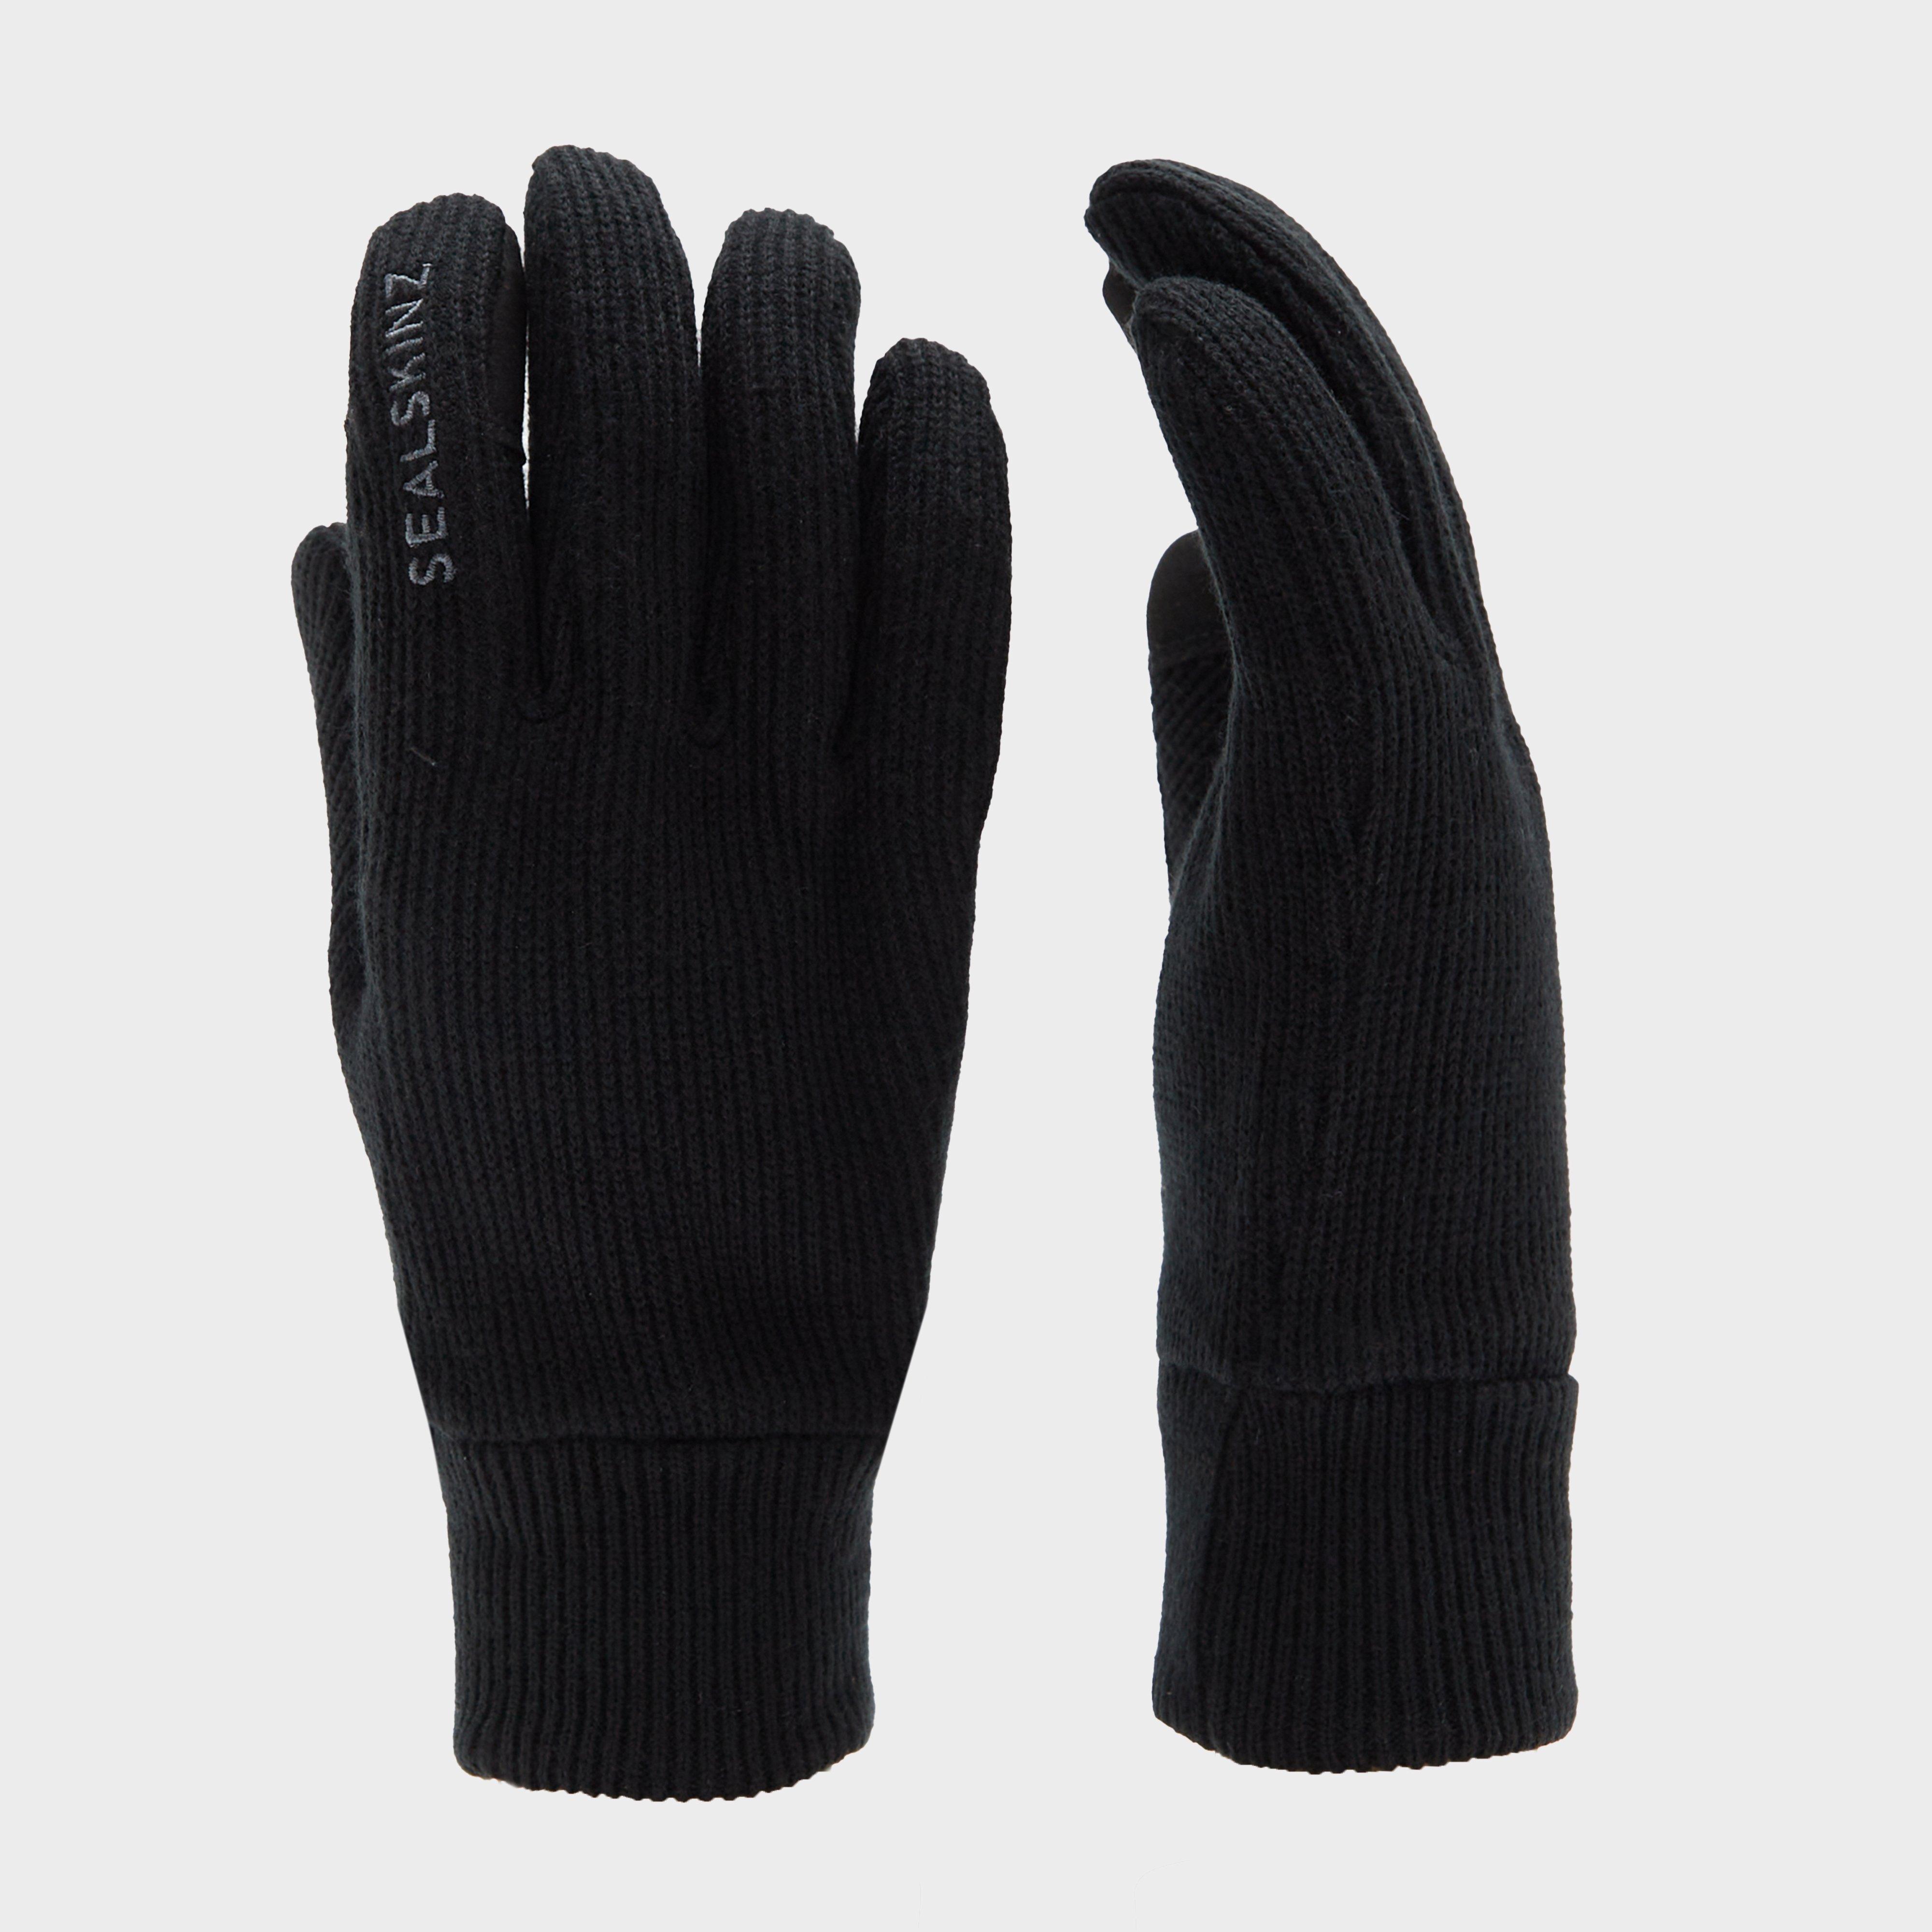 SealSkinz Sealskinz Unisex Necton Gloves - Blk, BLK